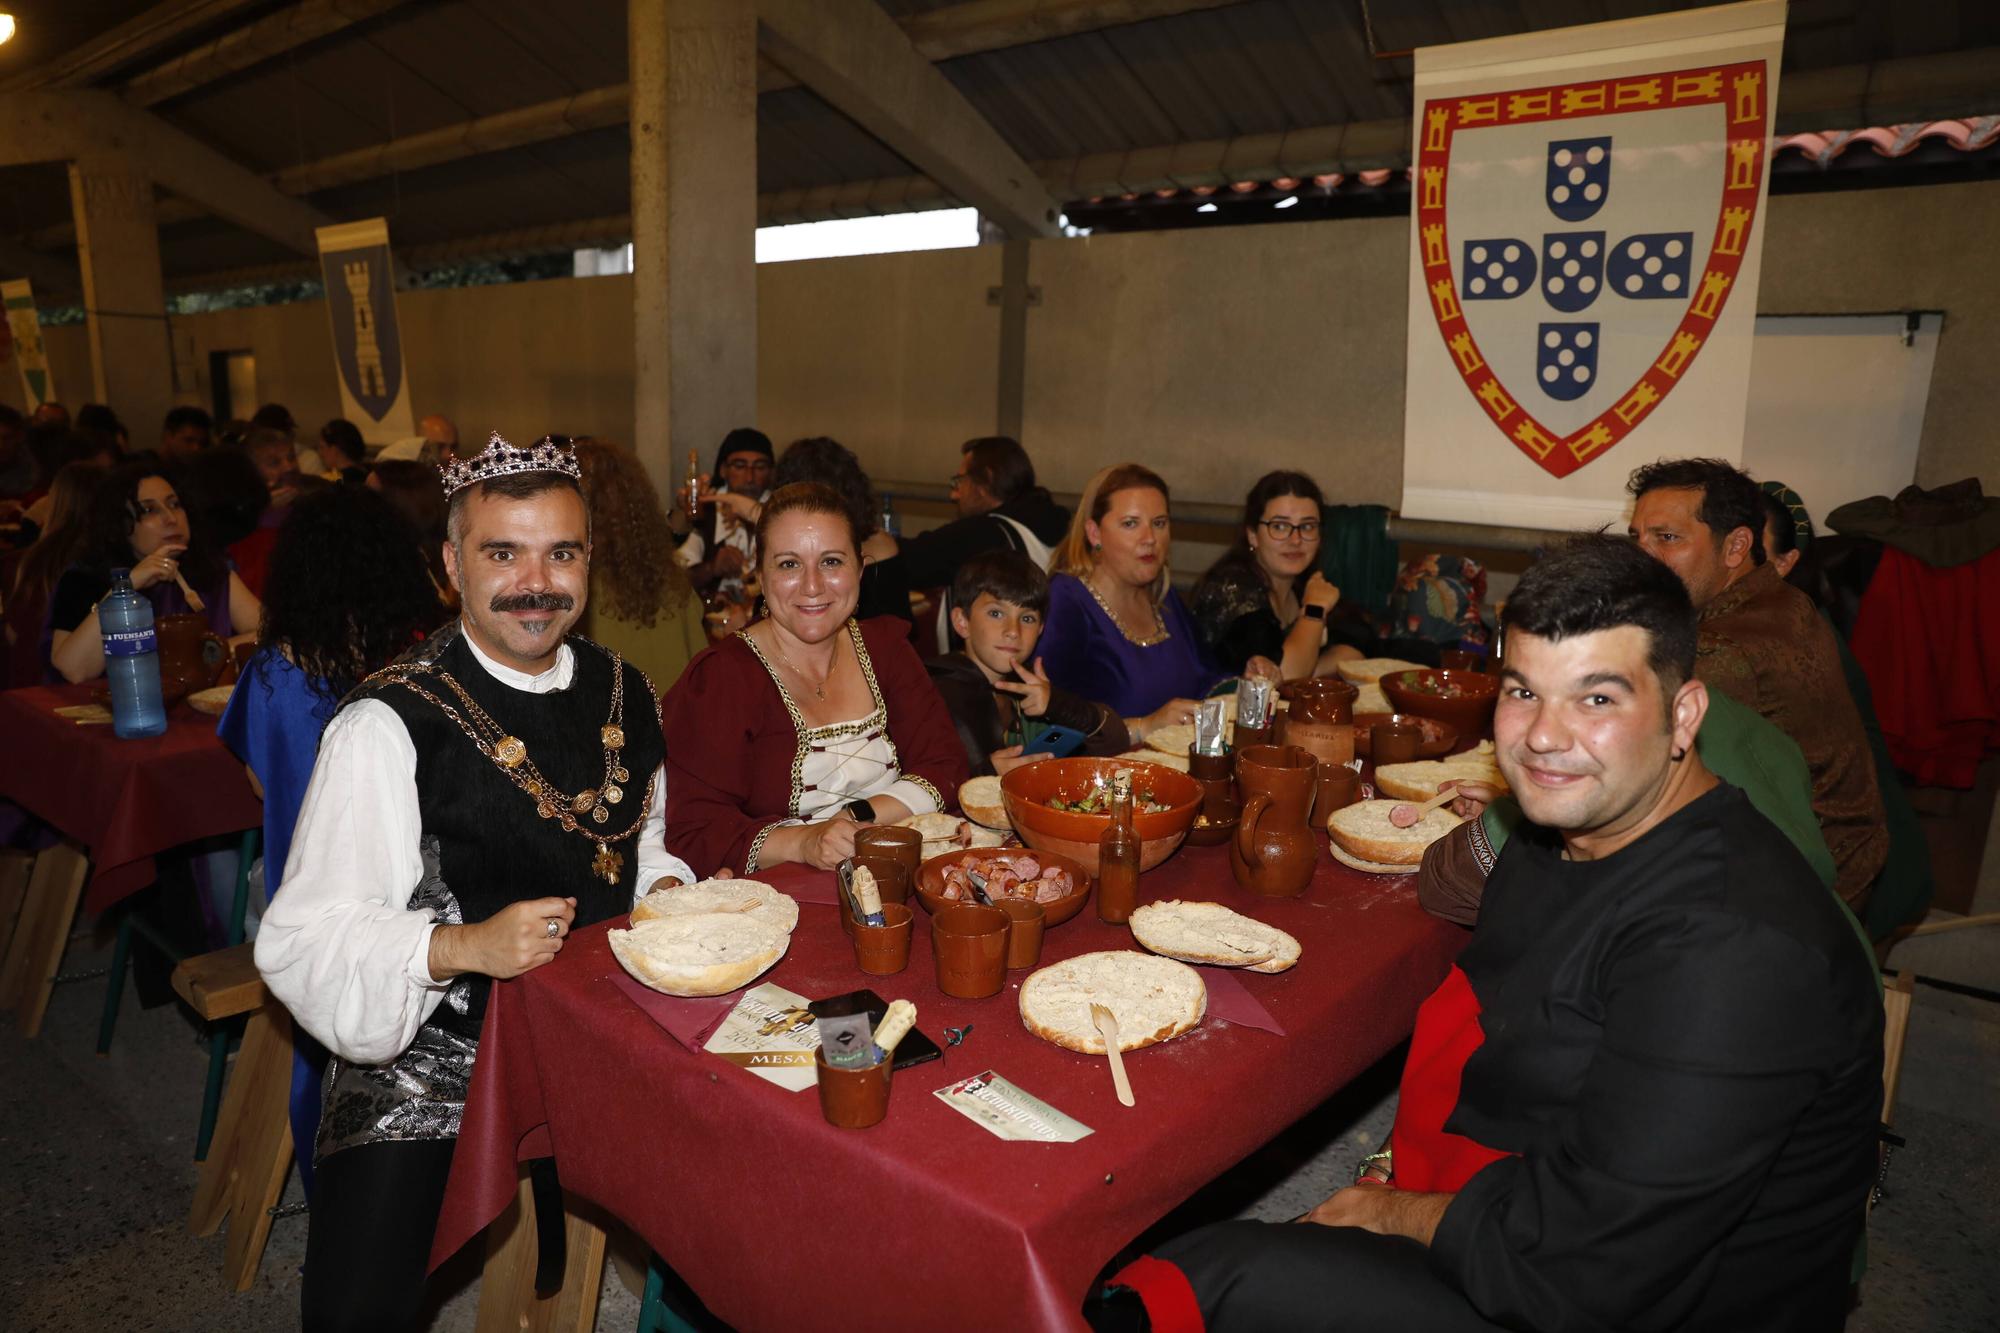 Exconxuraos hasta la bandera: espectacular noche en Llanera, con la gran cena medieval y la fiesta del fuego